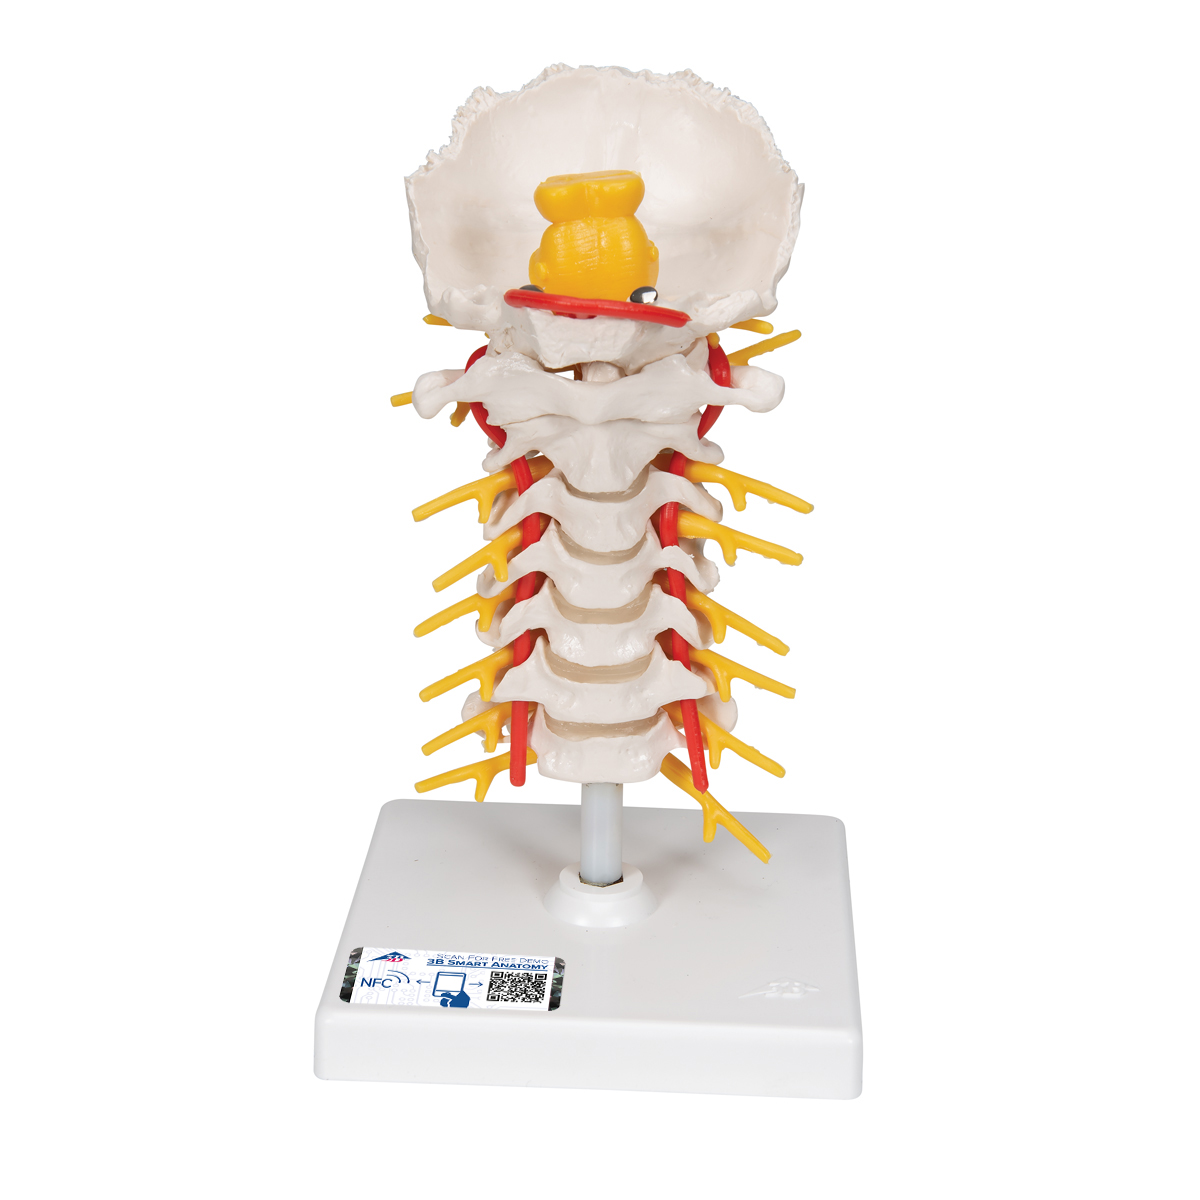 Halswirbelsäulenmodell, beweglich, auf Stativ - 3B Smart Anatomy, Bestellnummer 1000144, A72, 3B Scientific